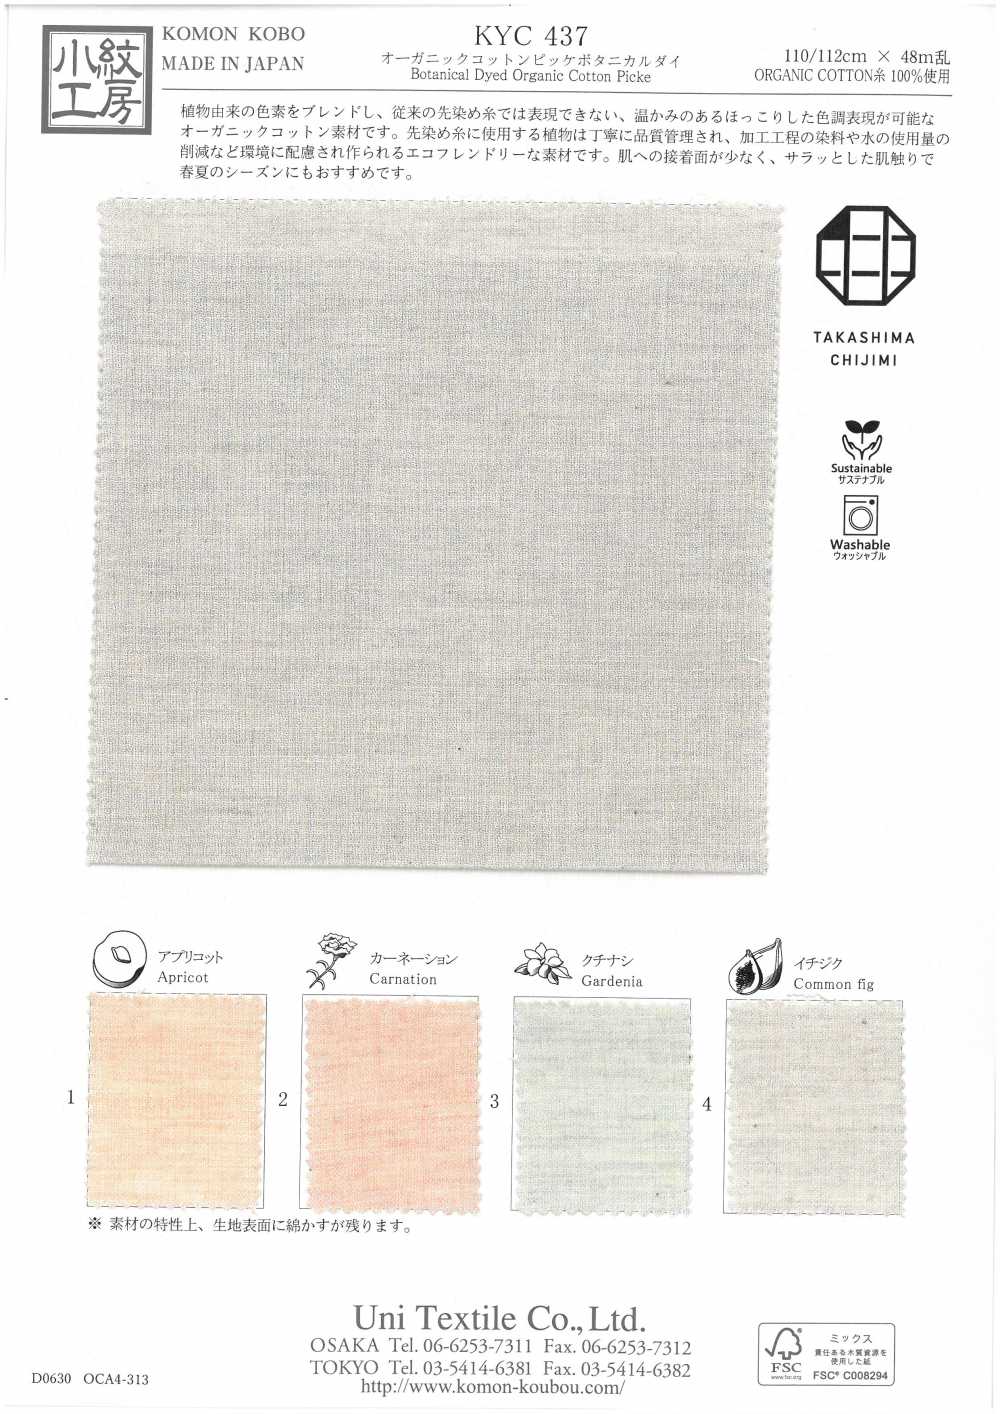 KYC437 Thuốc Nhuộm Thực Vật Cotton Vải Thun Cá Sấu Hữu Cơ Uni Textile